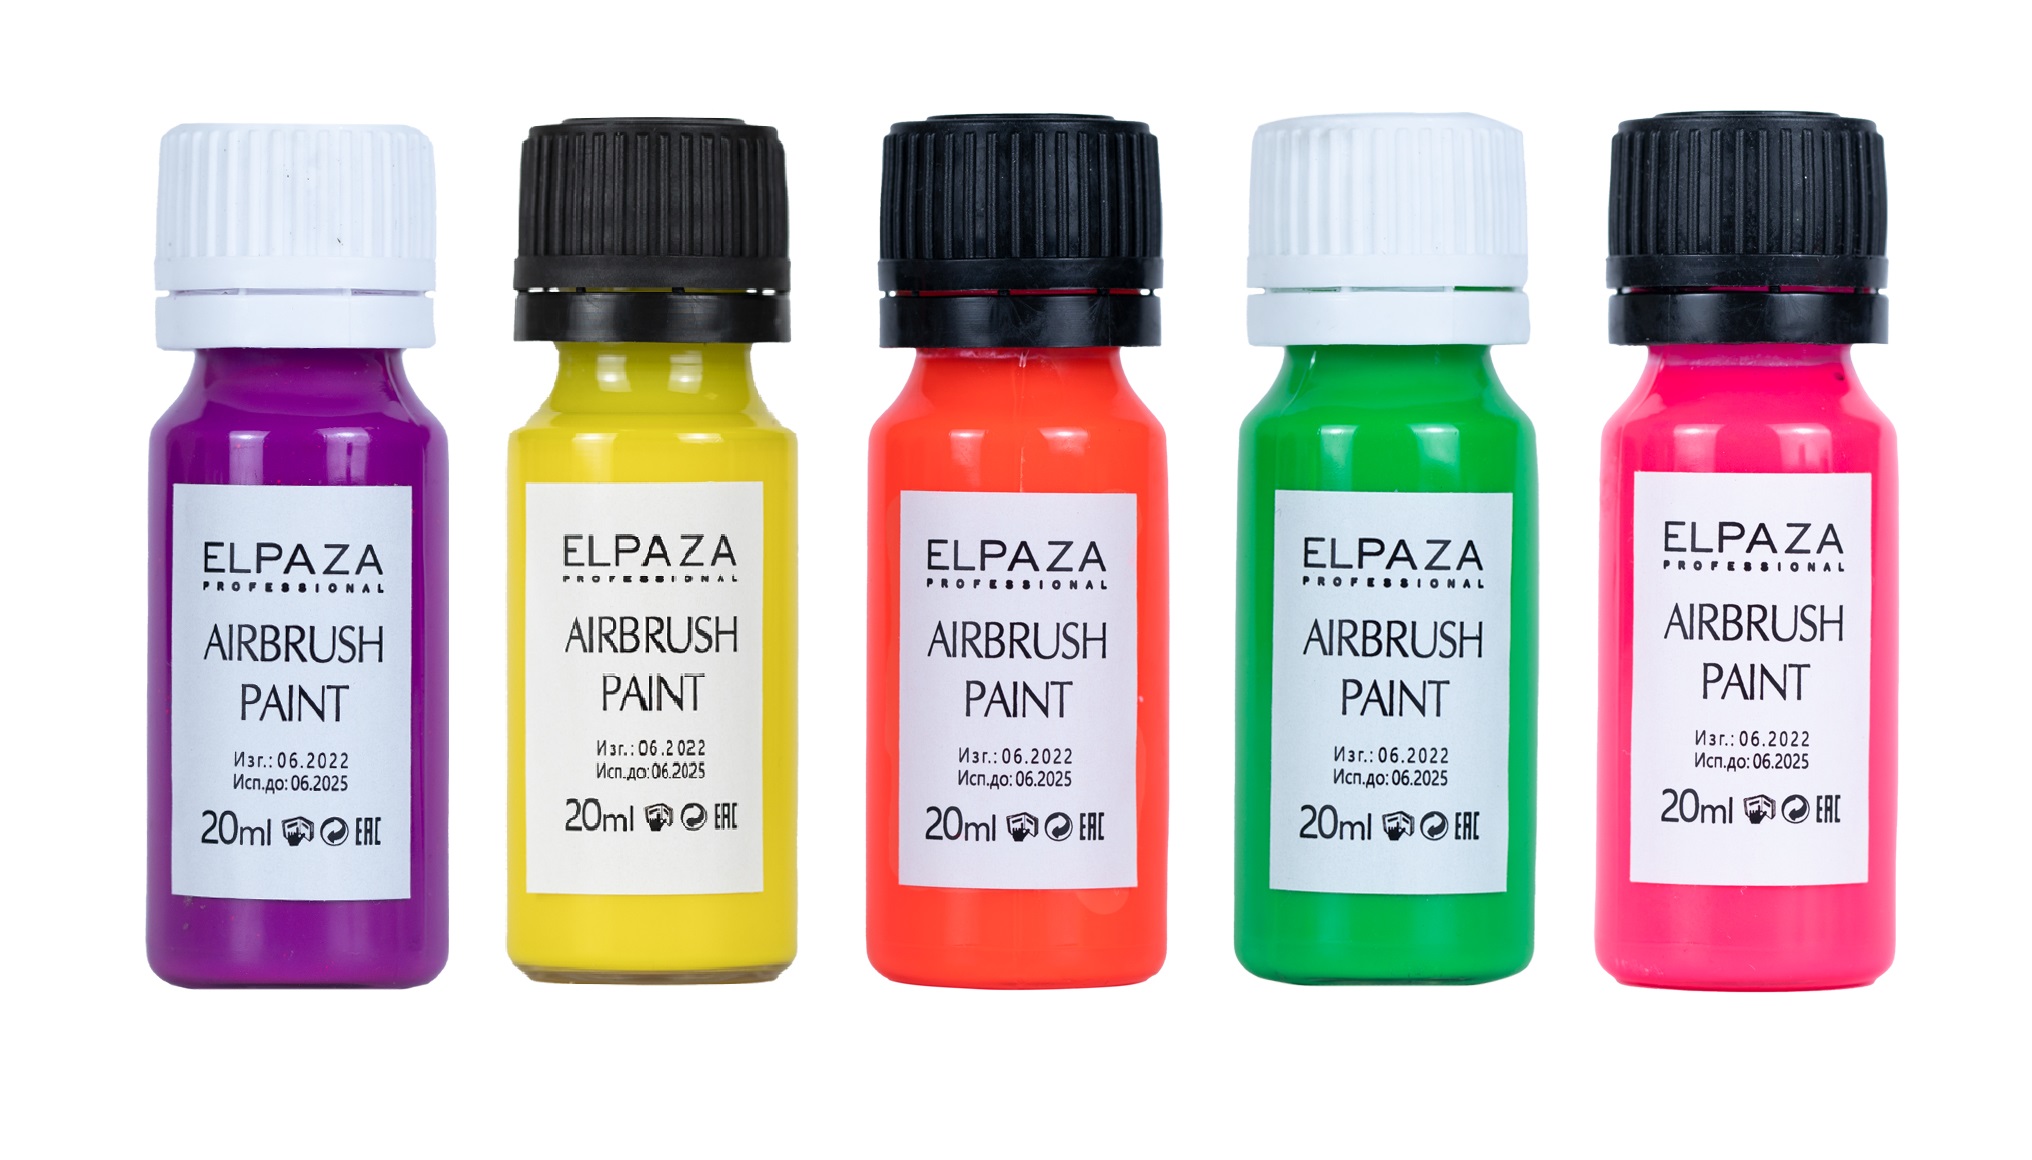 Краска неоновая для аэрографа Elpaza Airbrush Paint 5 шт краска для аэрографа elpaza airbrush paint металлик 5 шт